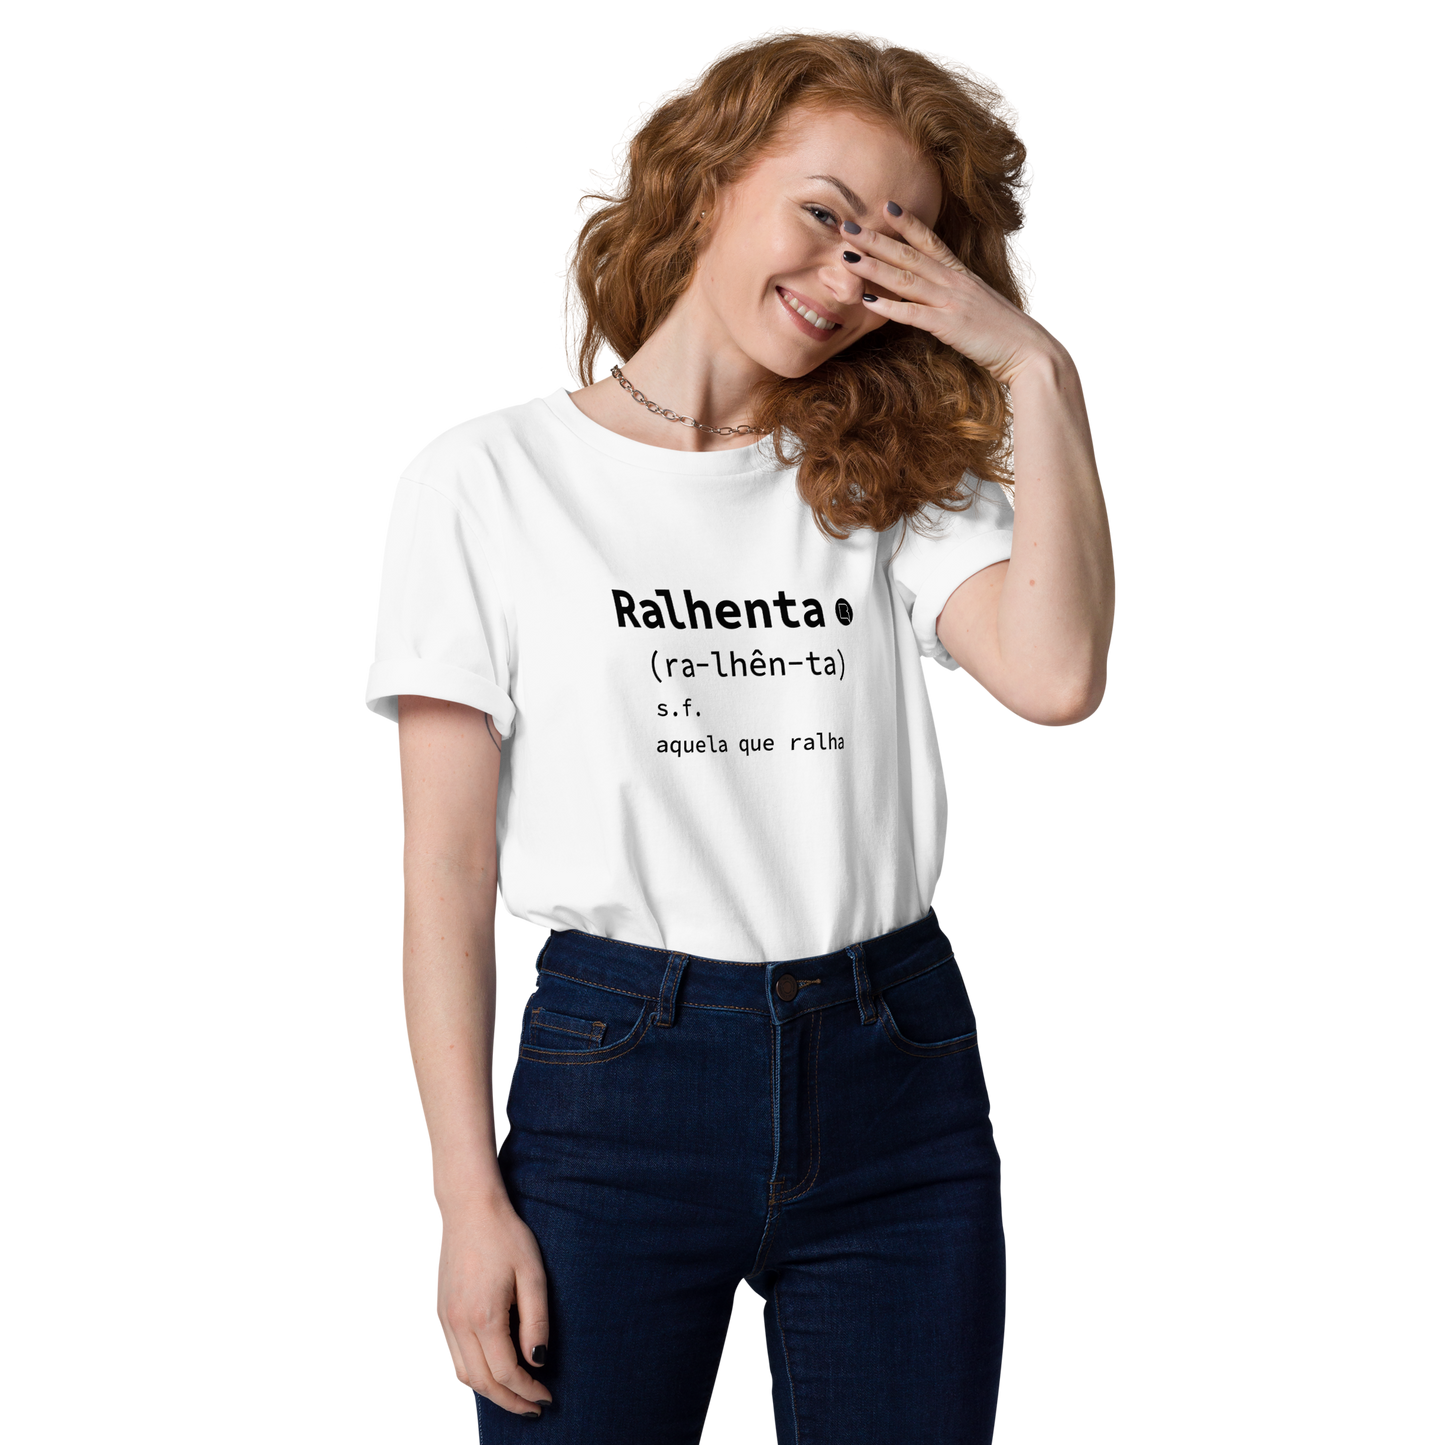 T-shirt da Ralhenta modelo dicionário - Ralhenta, s.f. aquela que ralha